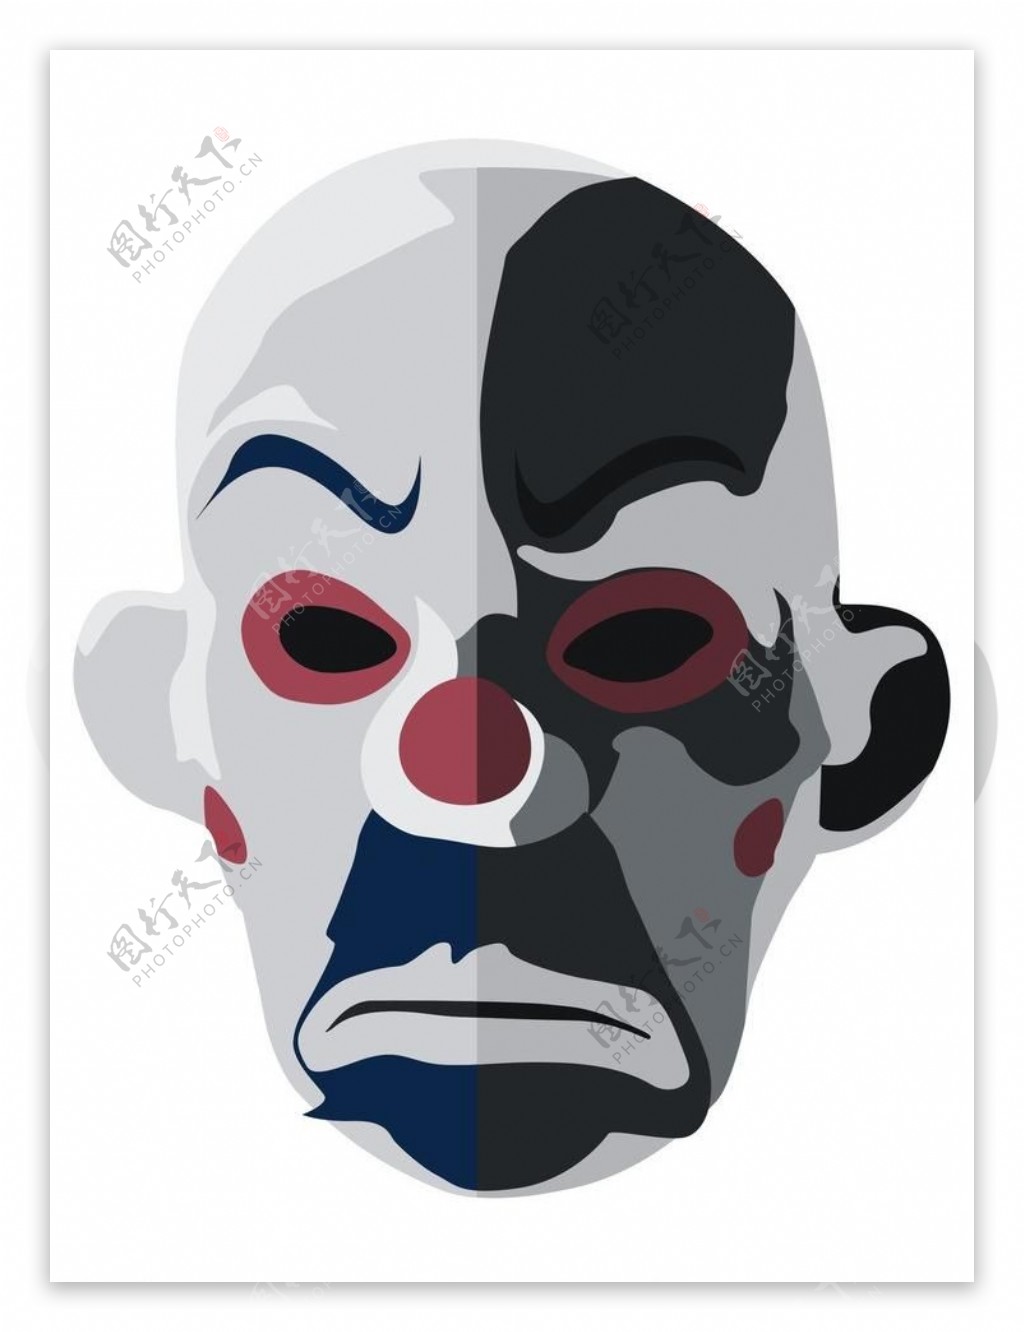 舞会面具 小丑面具 小丑红鼻子 电影小丑面具 塑料小丑面具 可爱-阿里巴巴